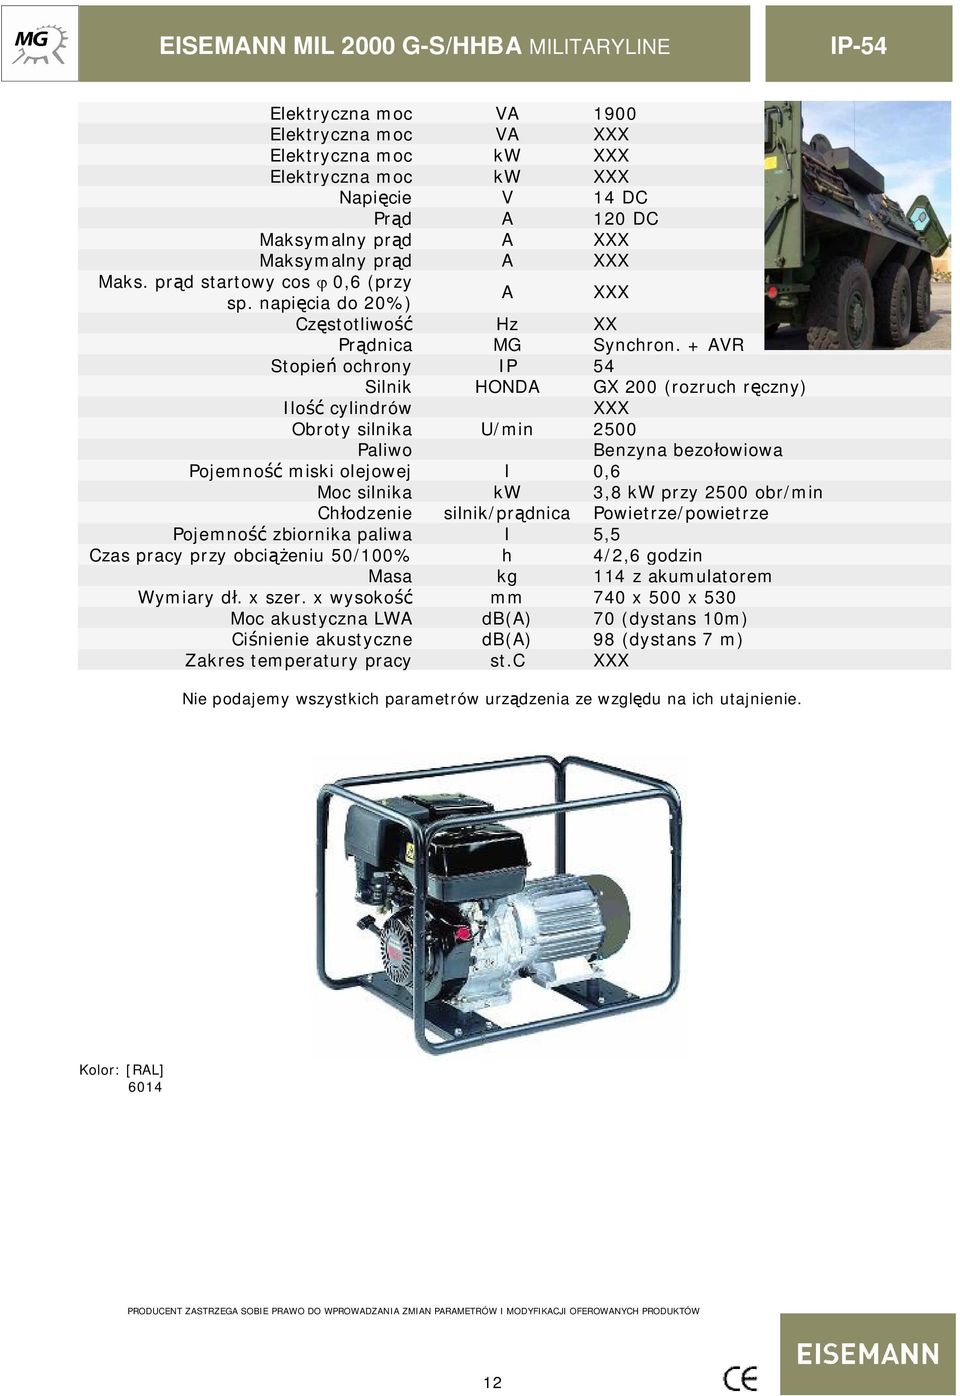 + AVR Stopie ochrony IP 54 Silnik HONDA GX 200 (rozruch r czny) Ilo cylindrów Obroty silnika U/min 2500 Paliwo Benzyna bezo owiowa Pojemno miski olejowej l 0,6 Moc silnika kw 3,8 kw przy 2500 obr/min